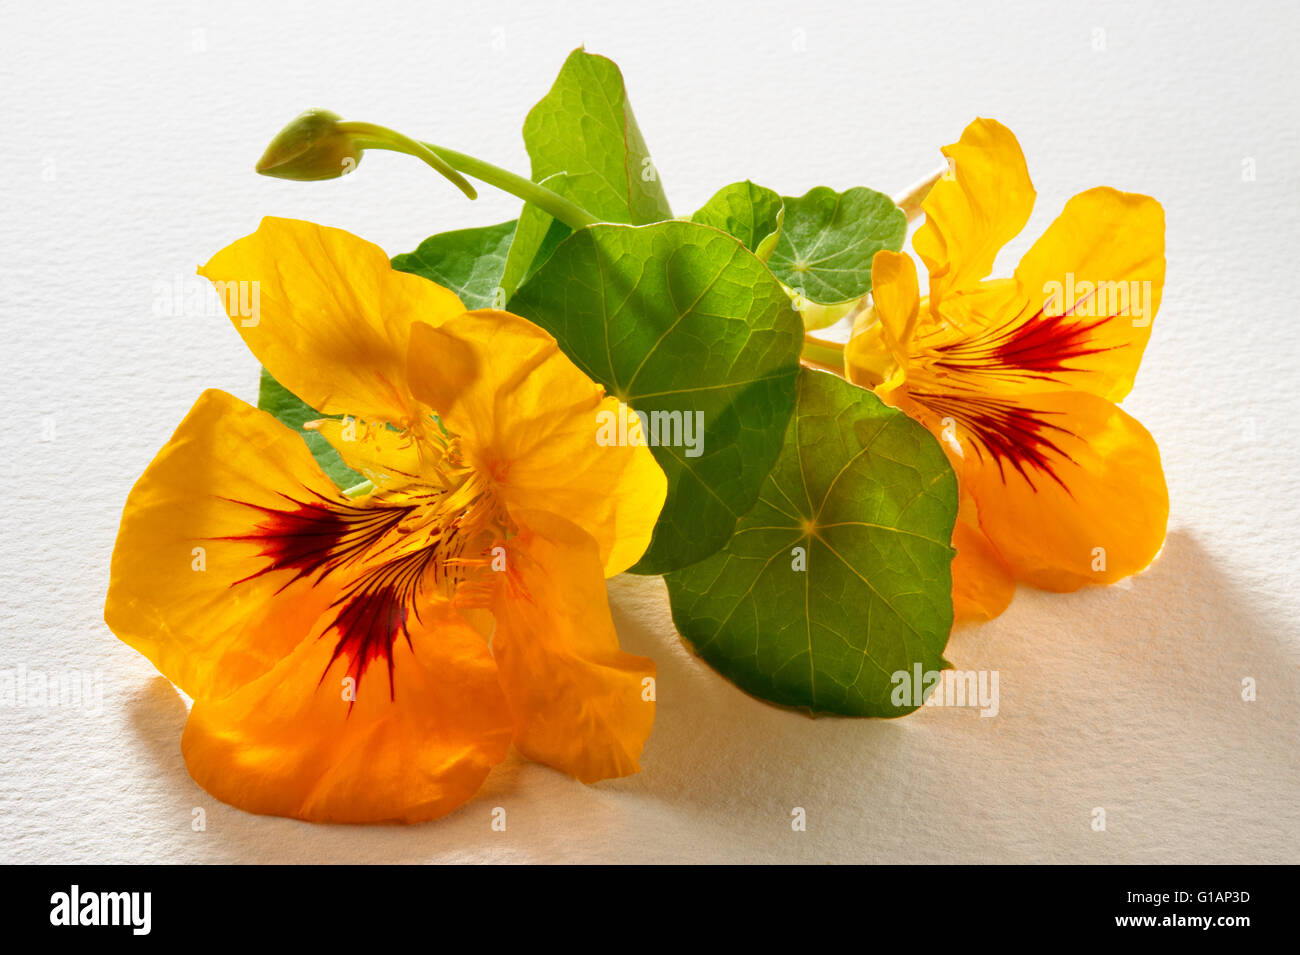 Fresh yellow nasturtium flowers & leaves Stock Photo